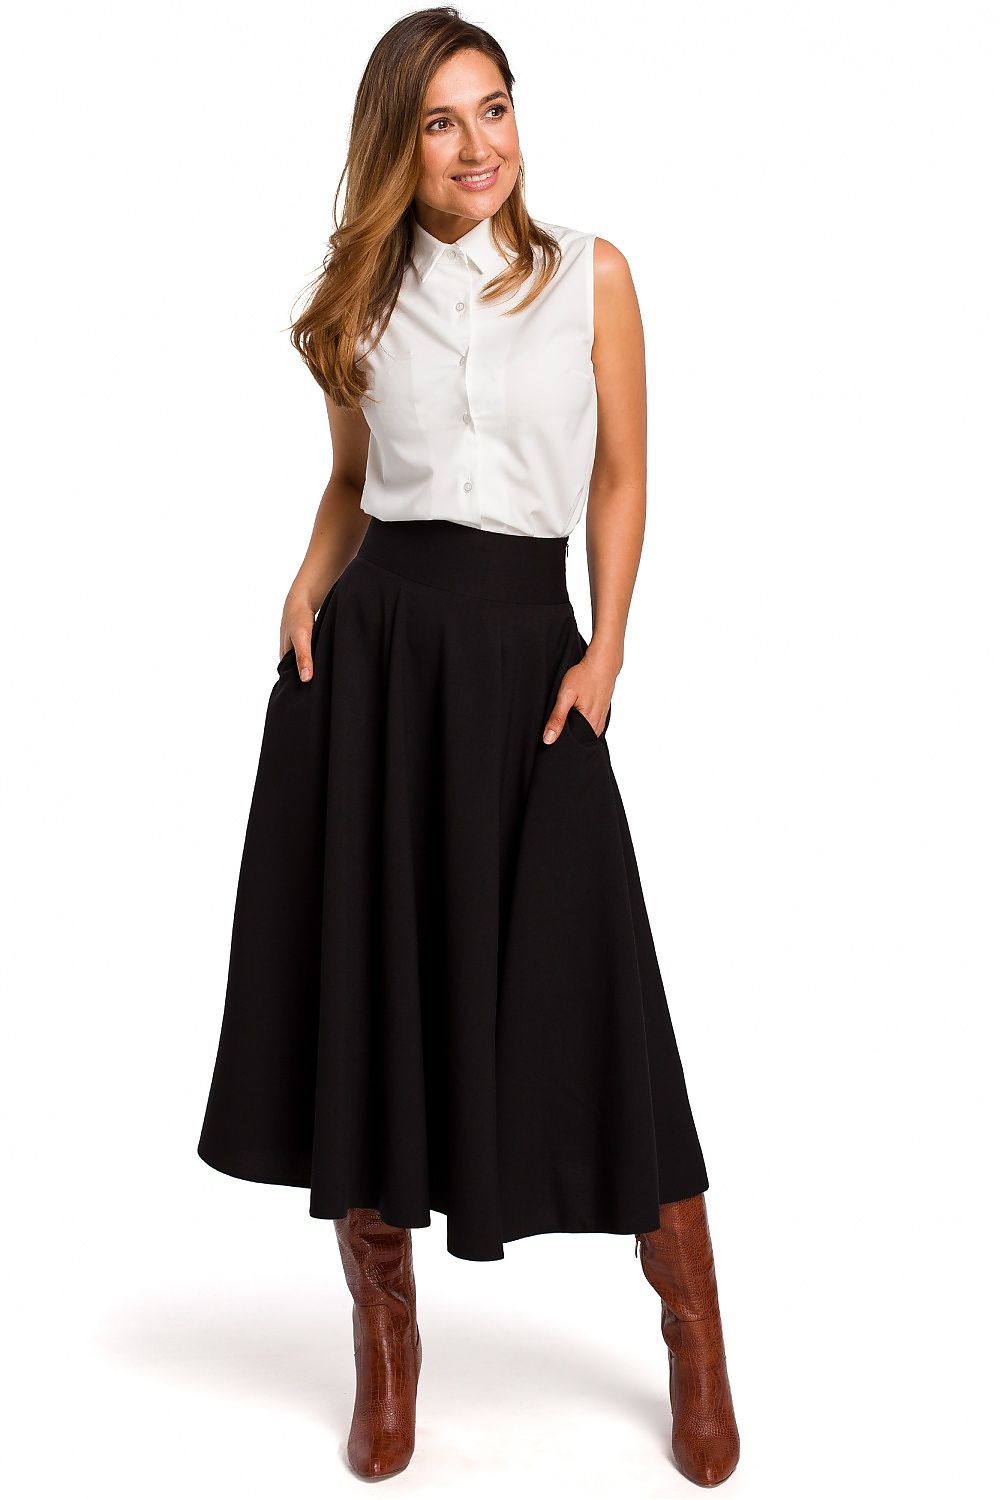 Style & Sass Full Skirt